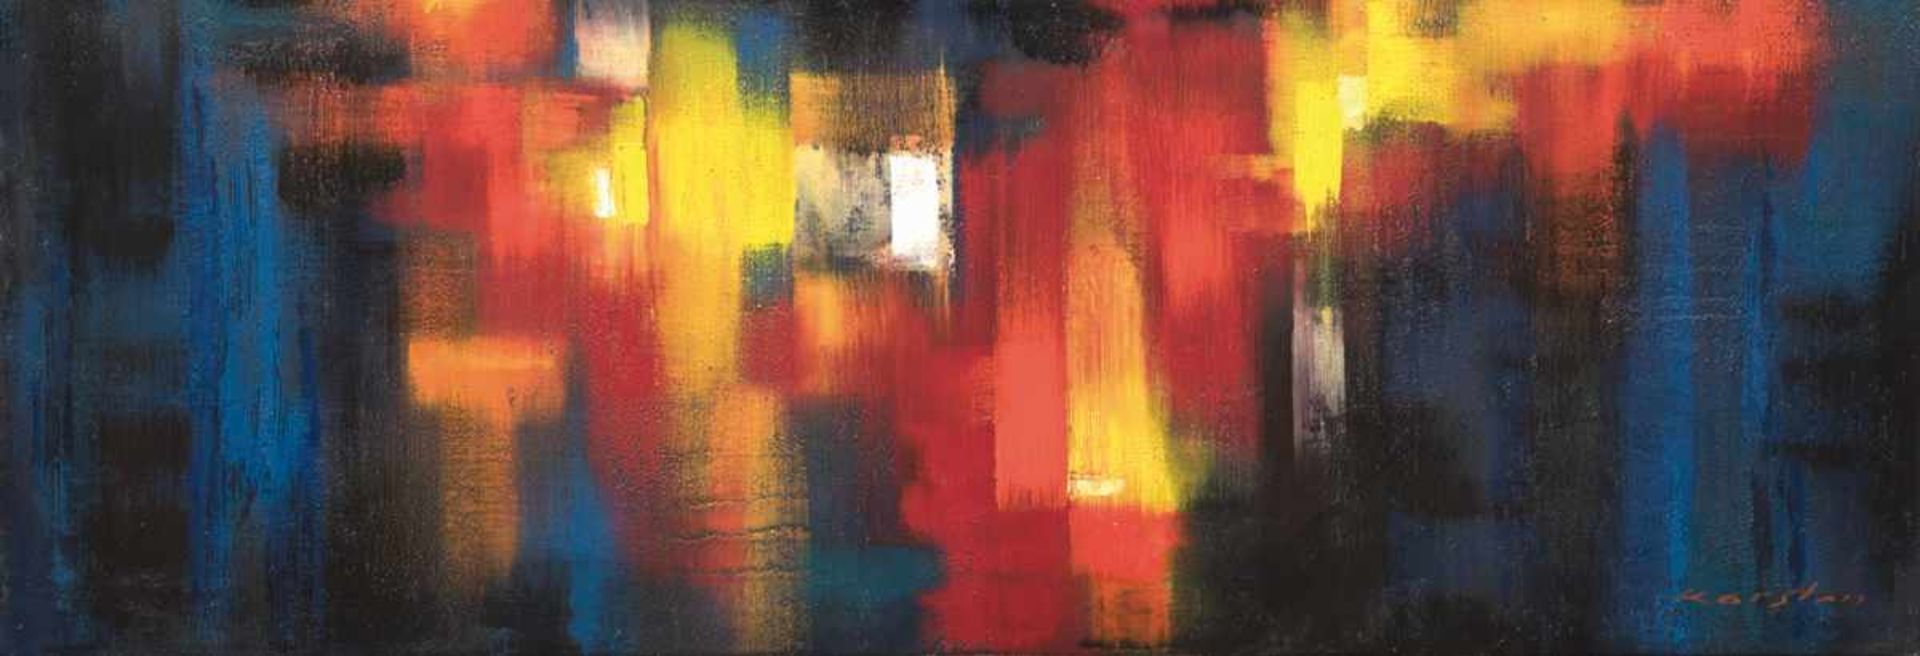 Karsten, O. "Abstrakte Komposition" um 1960, Öl/Lw., sign. u.r., 35x101 cm- - -23.80 % buyer's